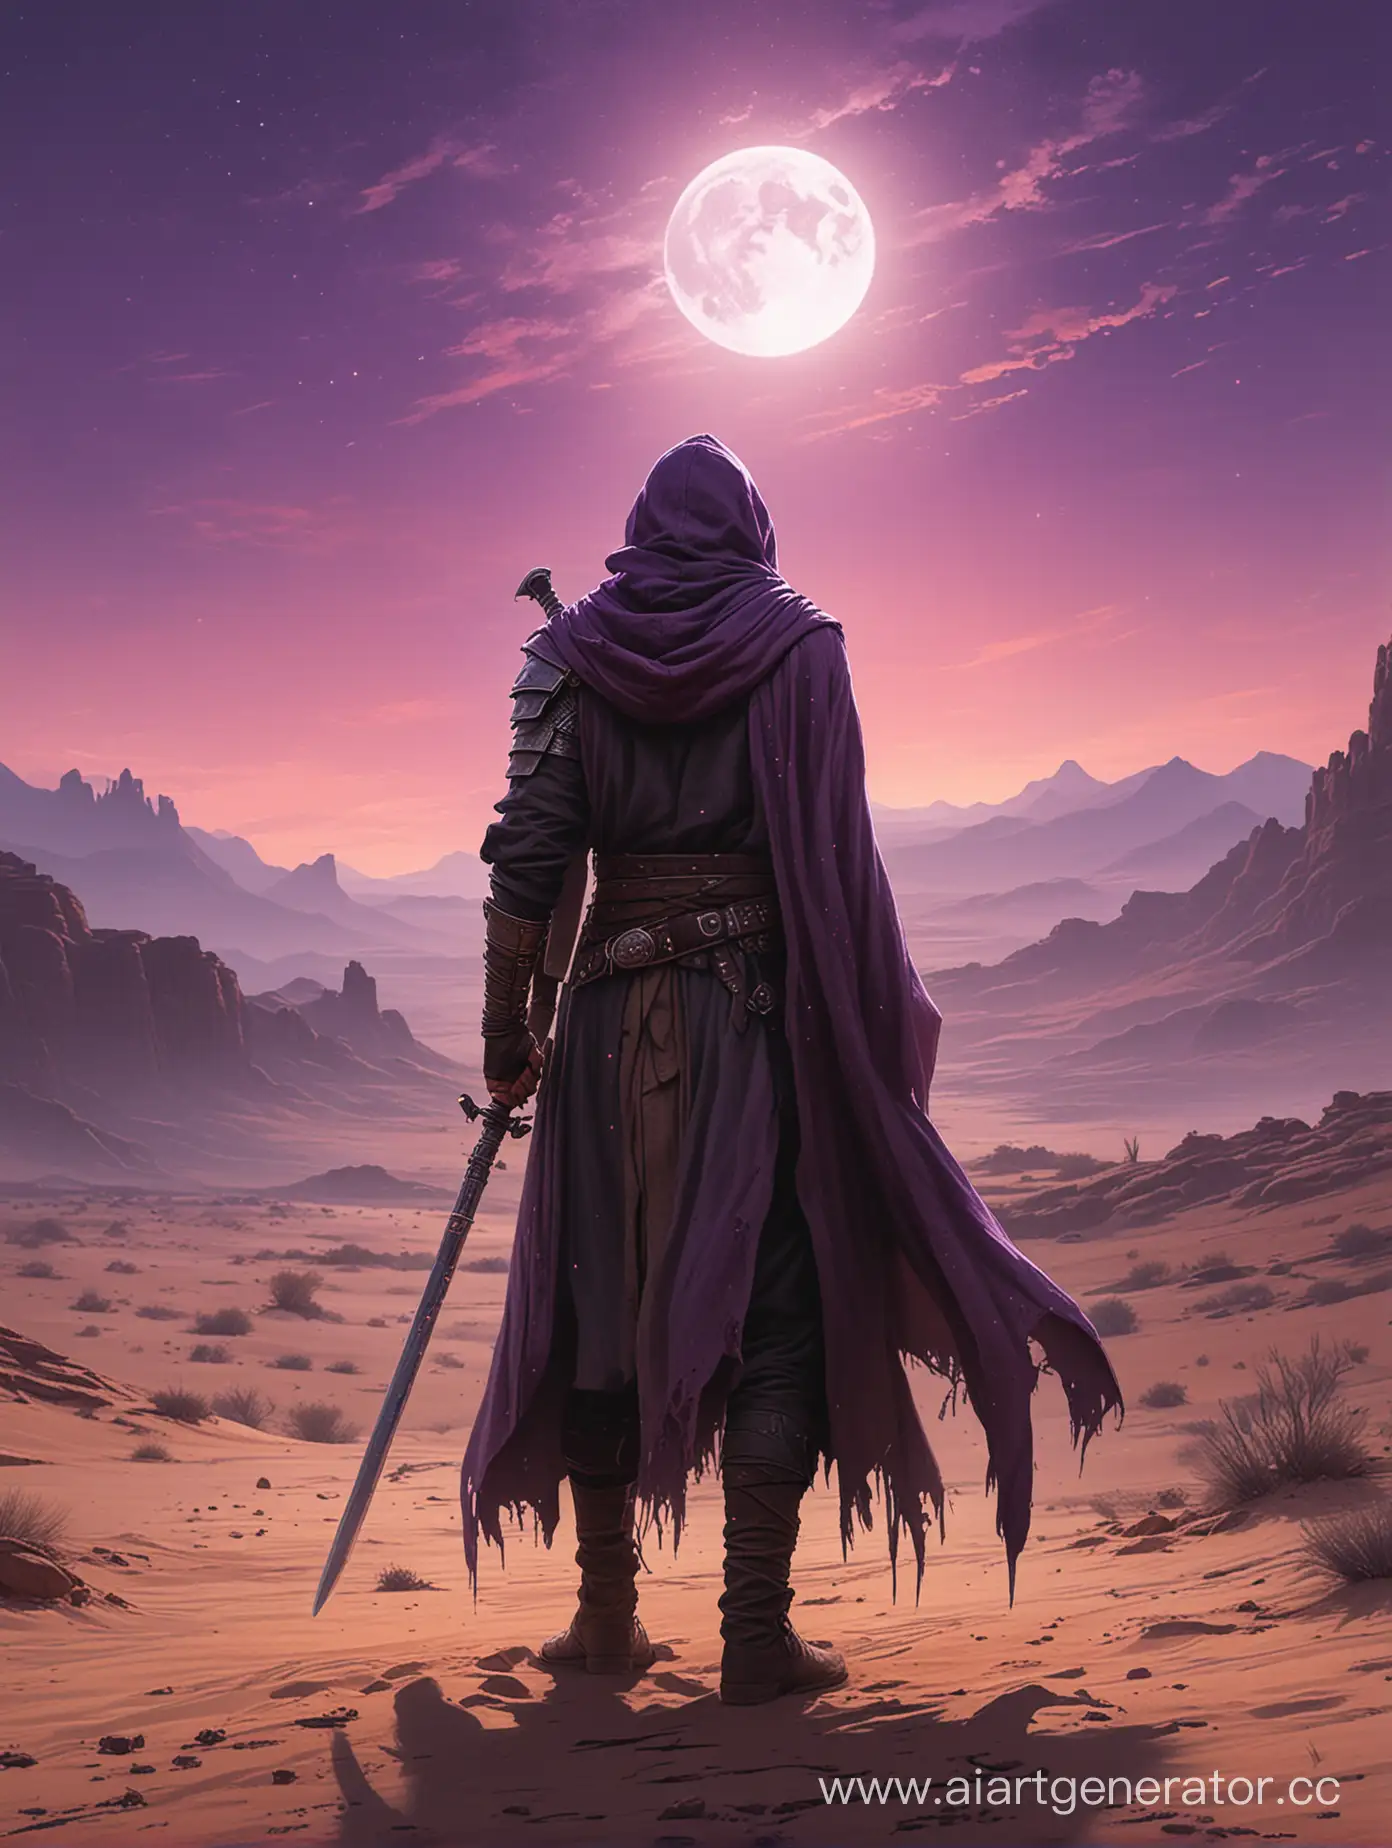 Мужчина в потрепанном плаще с надетым капюшоном стоит спиной, Правый рукав оторван, в правой руке палаш, На фоне пустыня и фиолетовое лунное небо